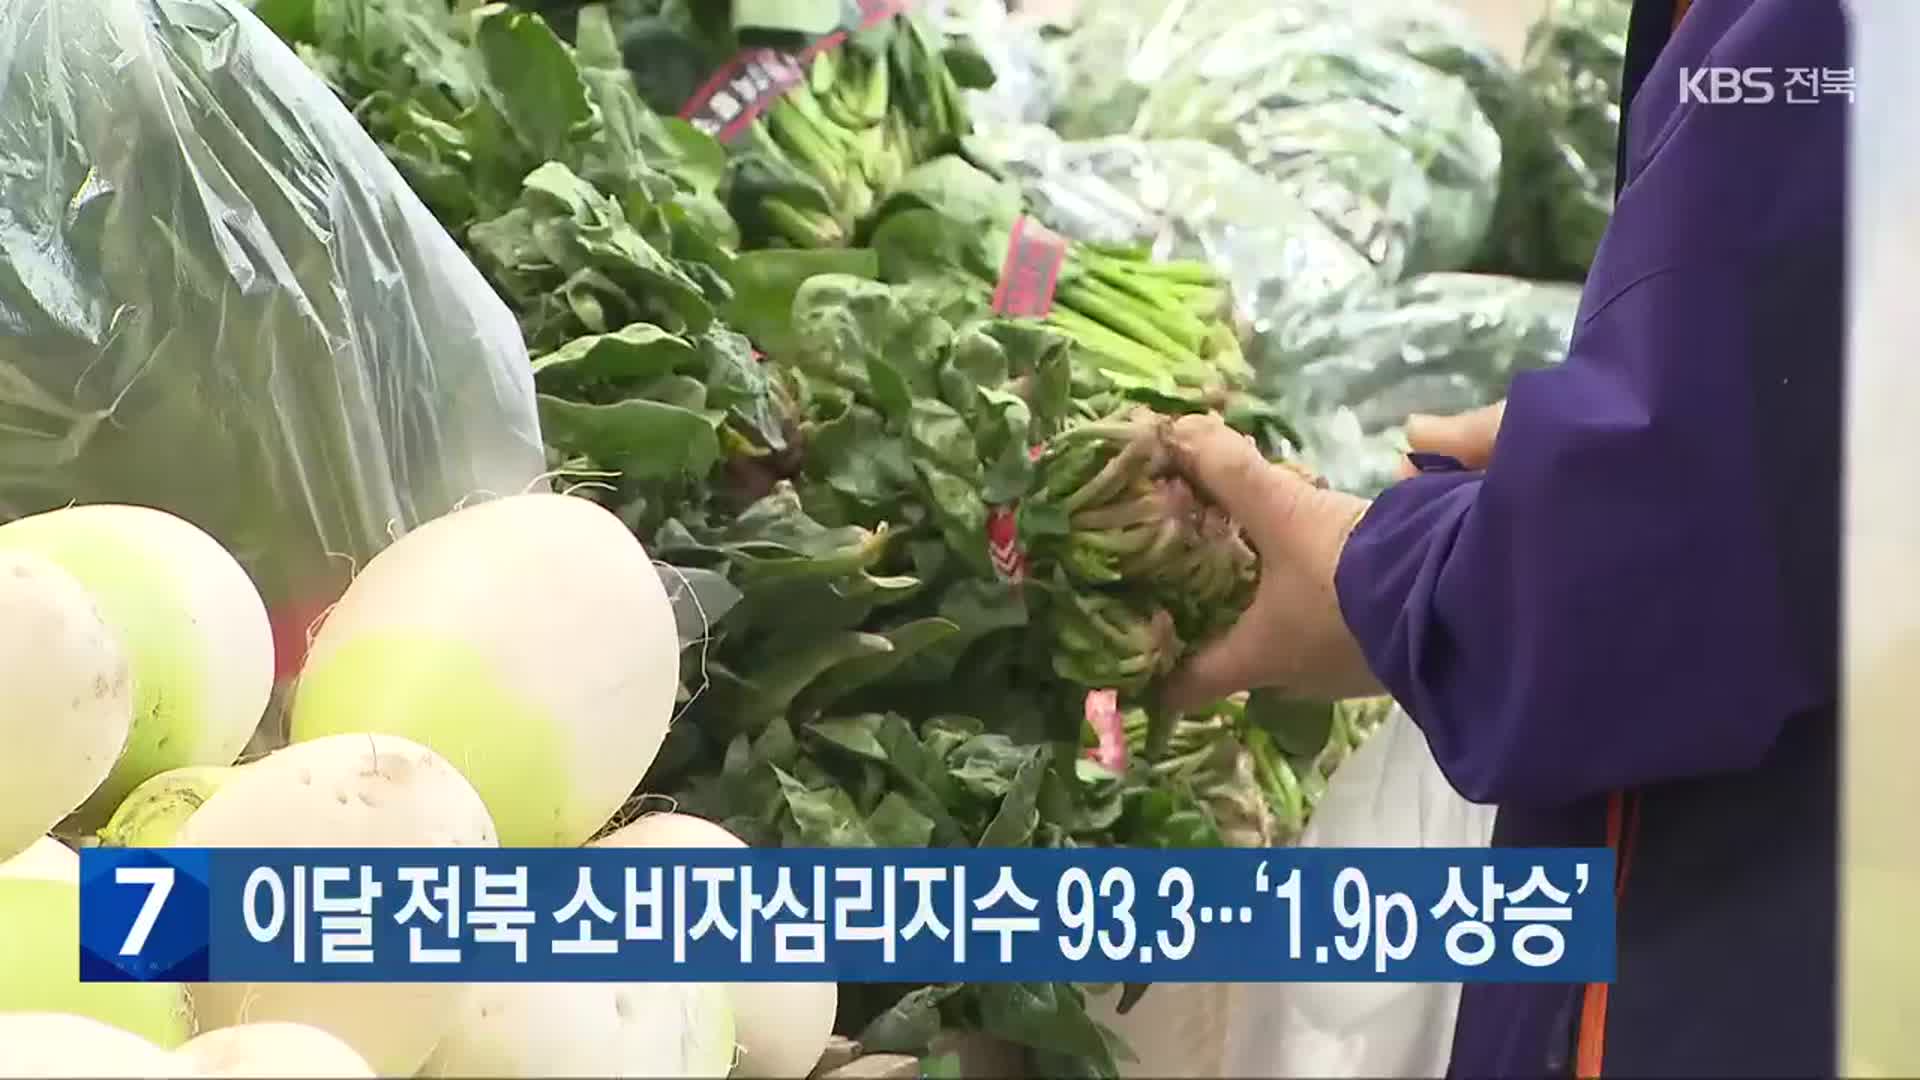 이달 전북 소비자심리지수 93.3…‘1.9p 상승’